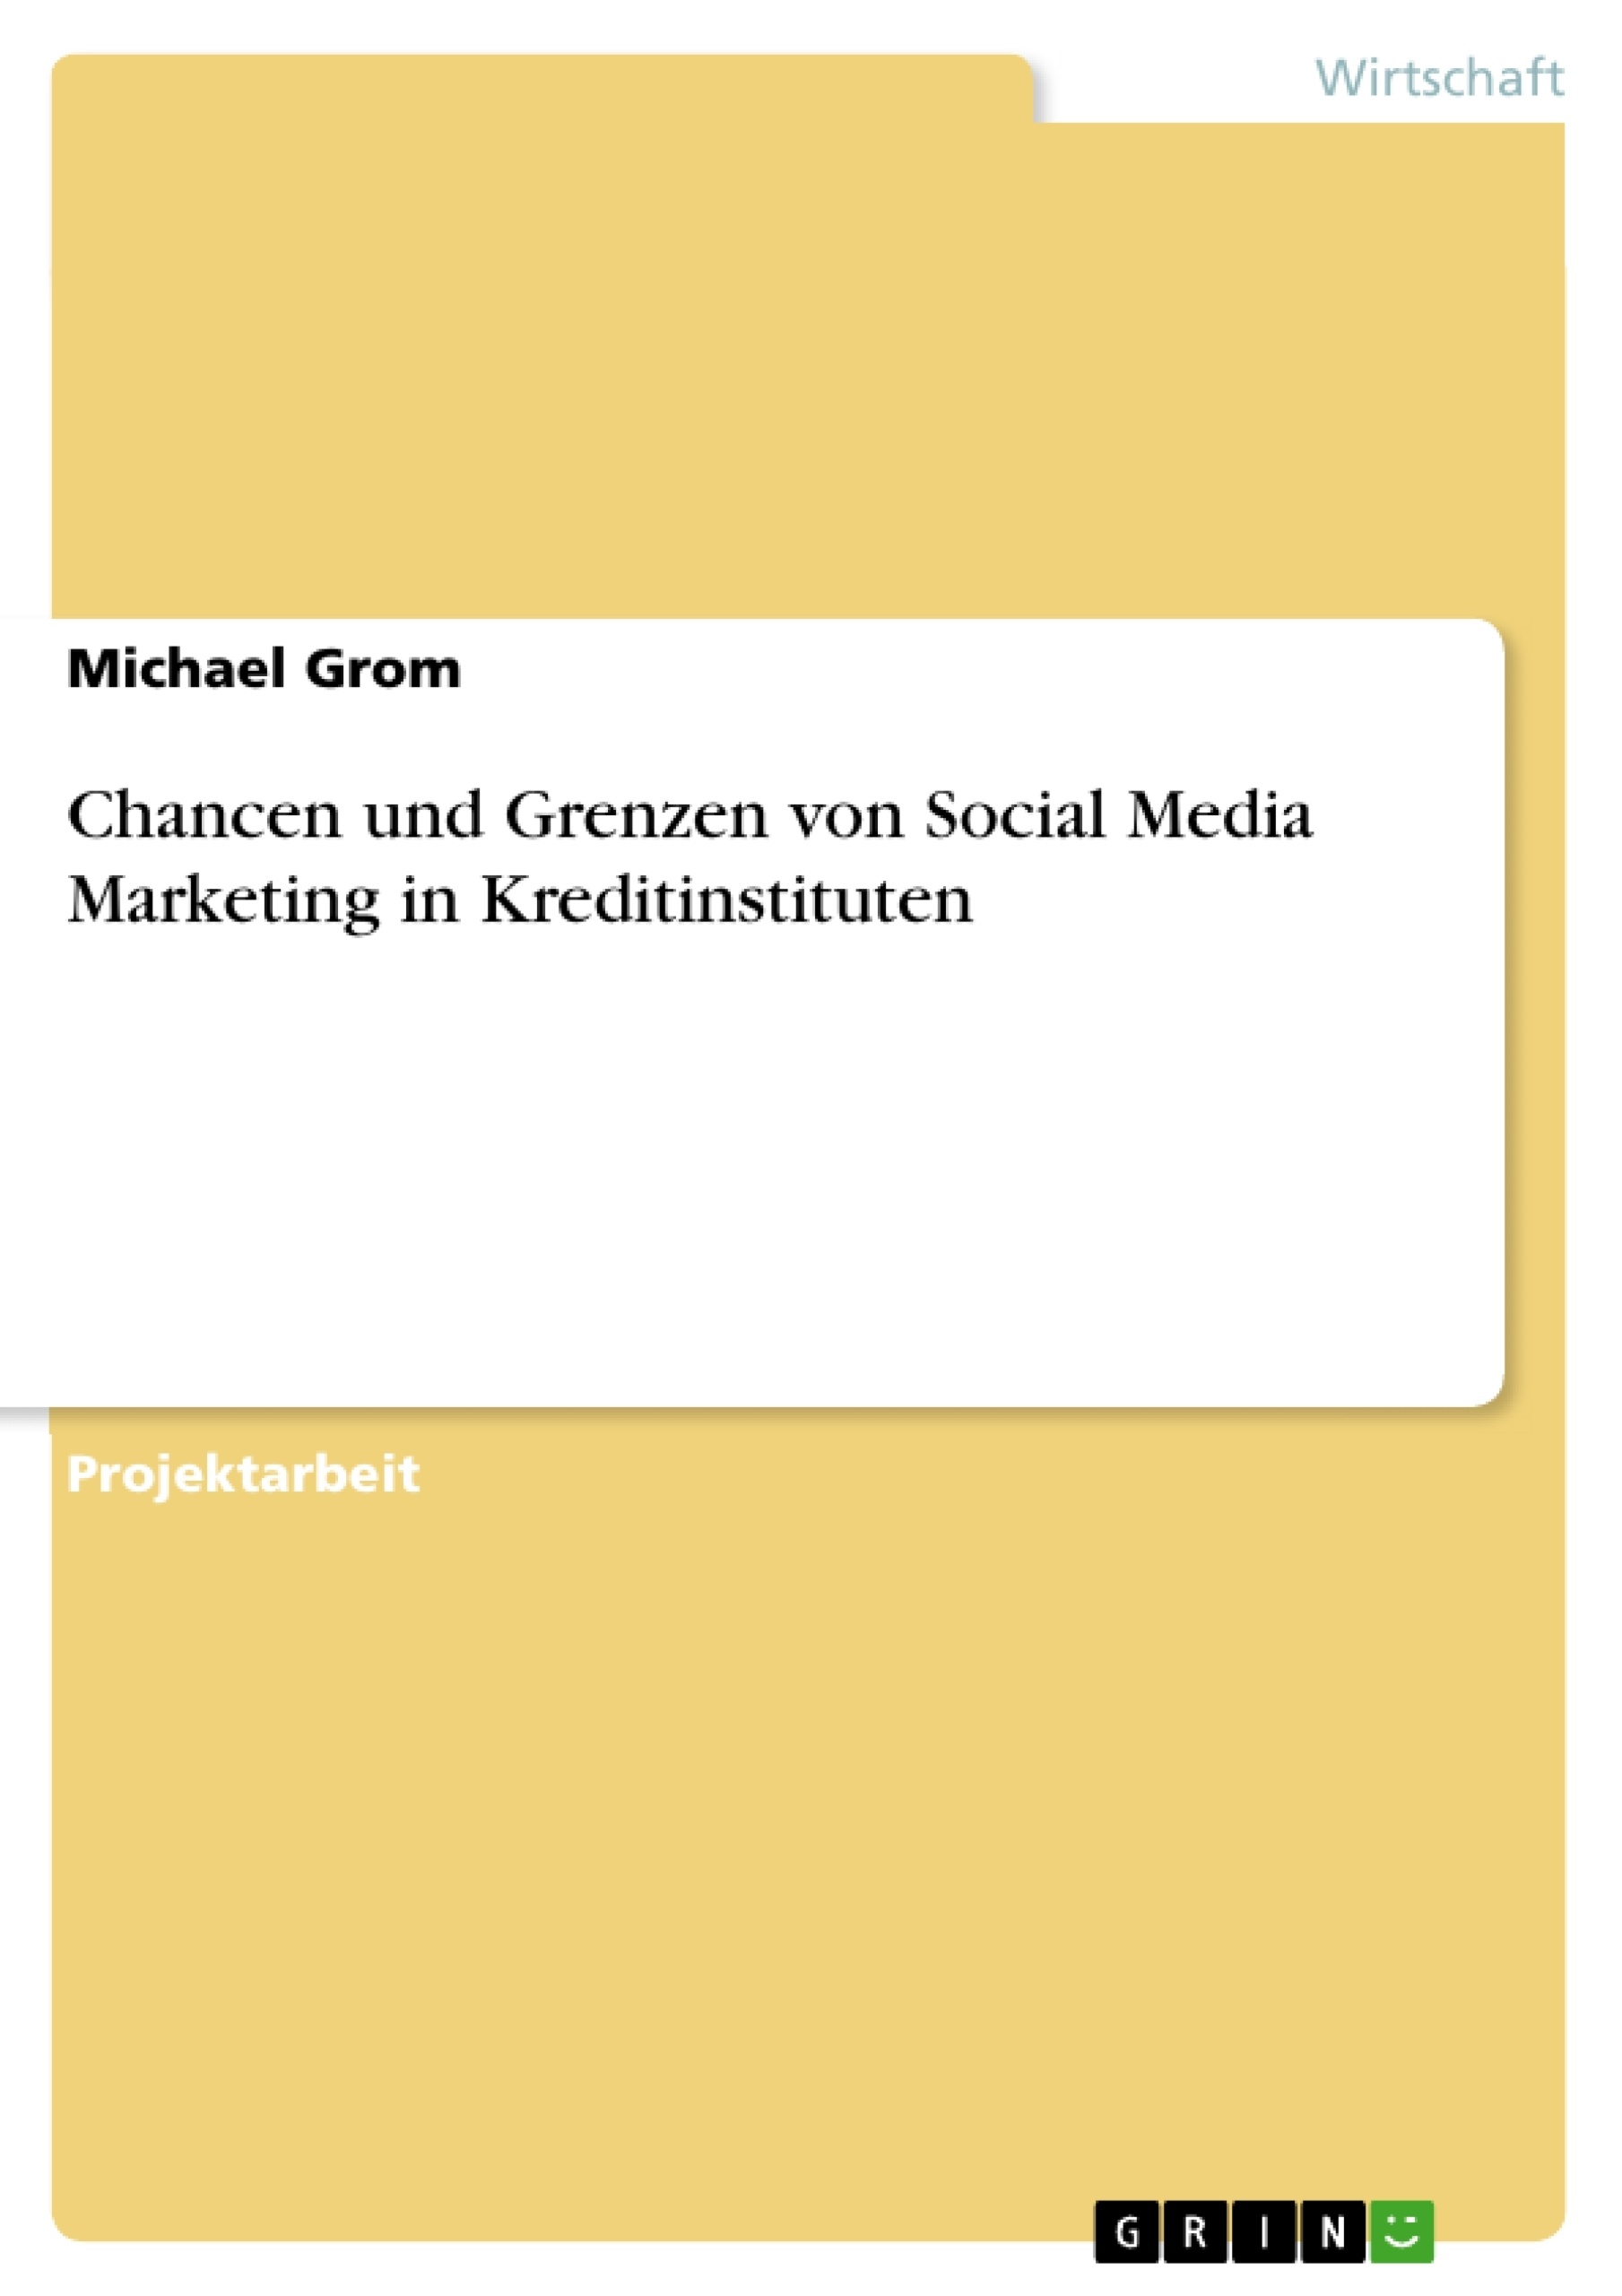 Title: Chancen und Grenzen von Social Media Marketing in Kreditinstituten